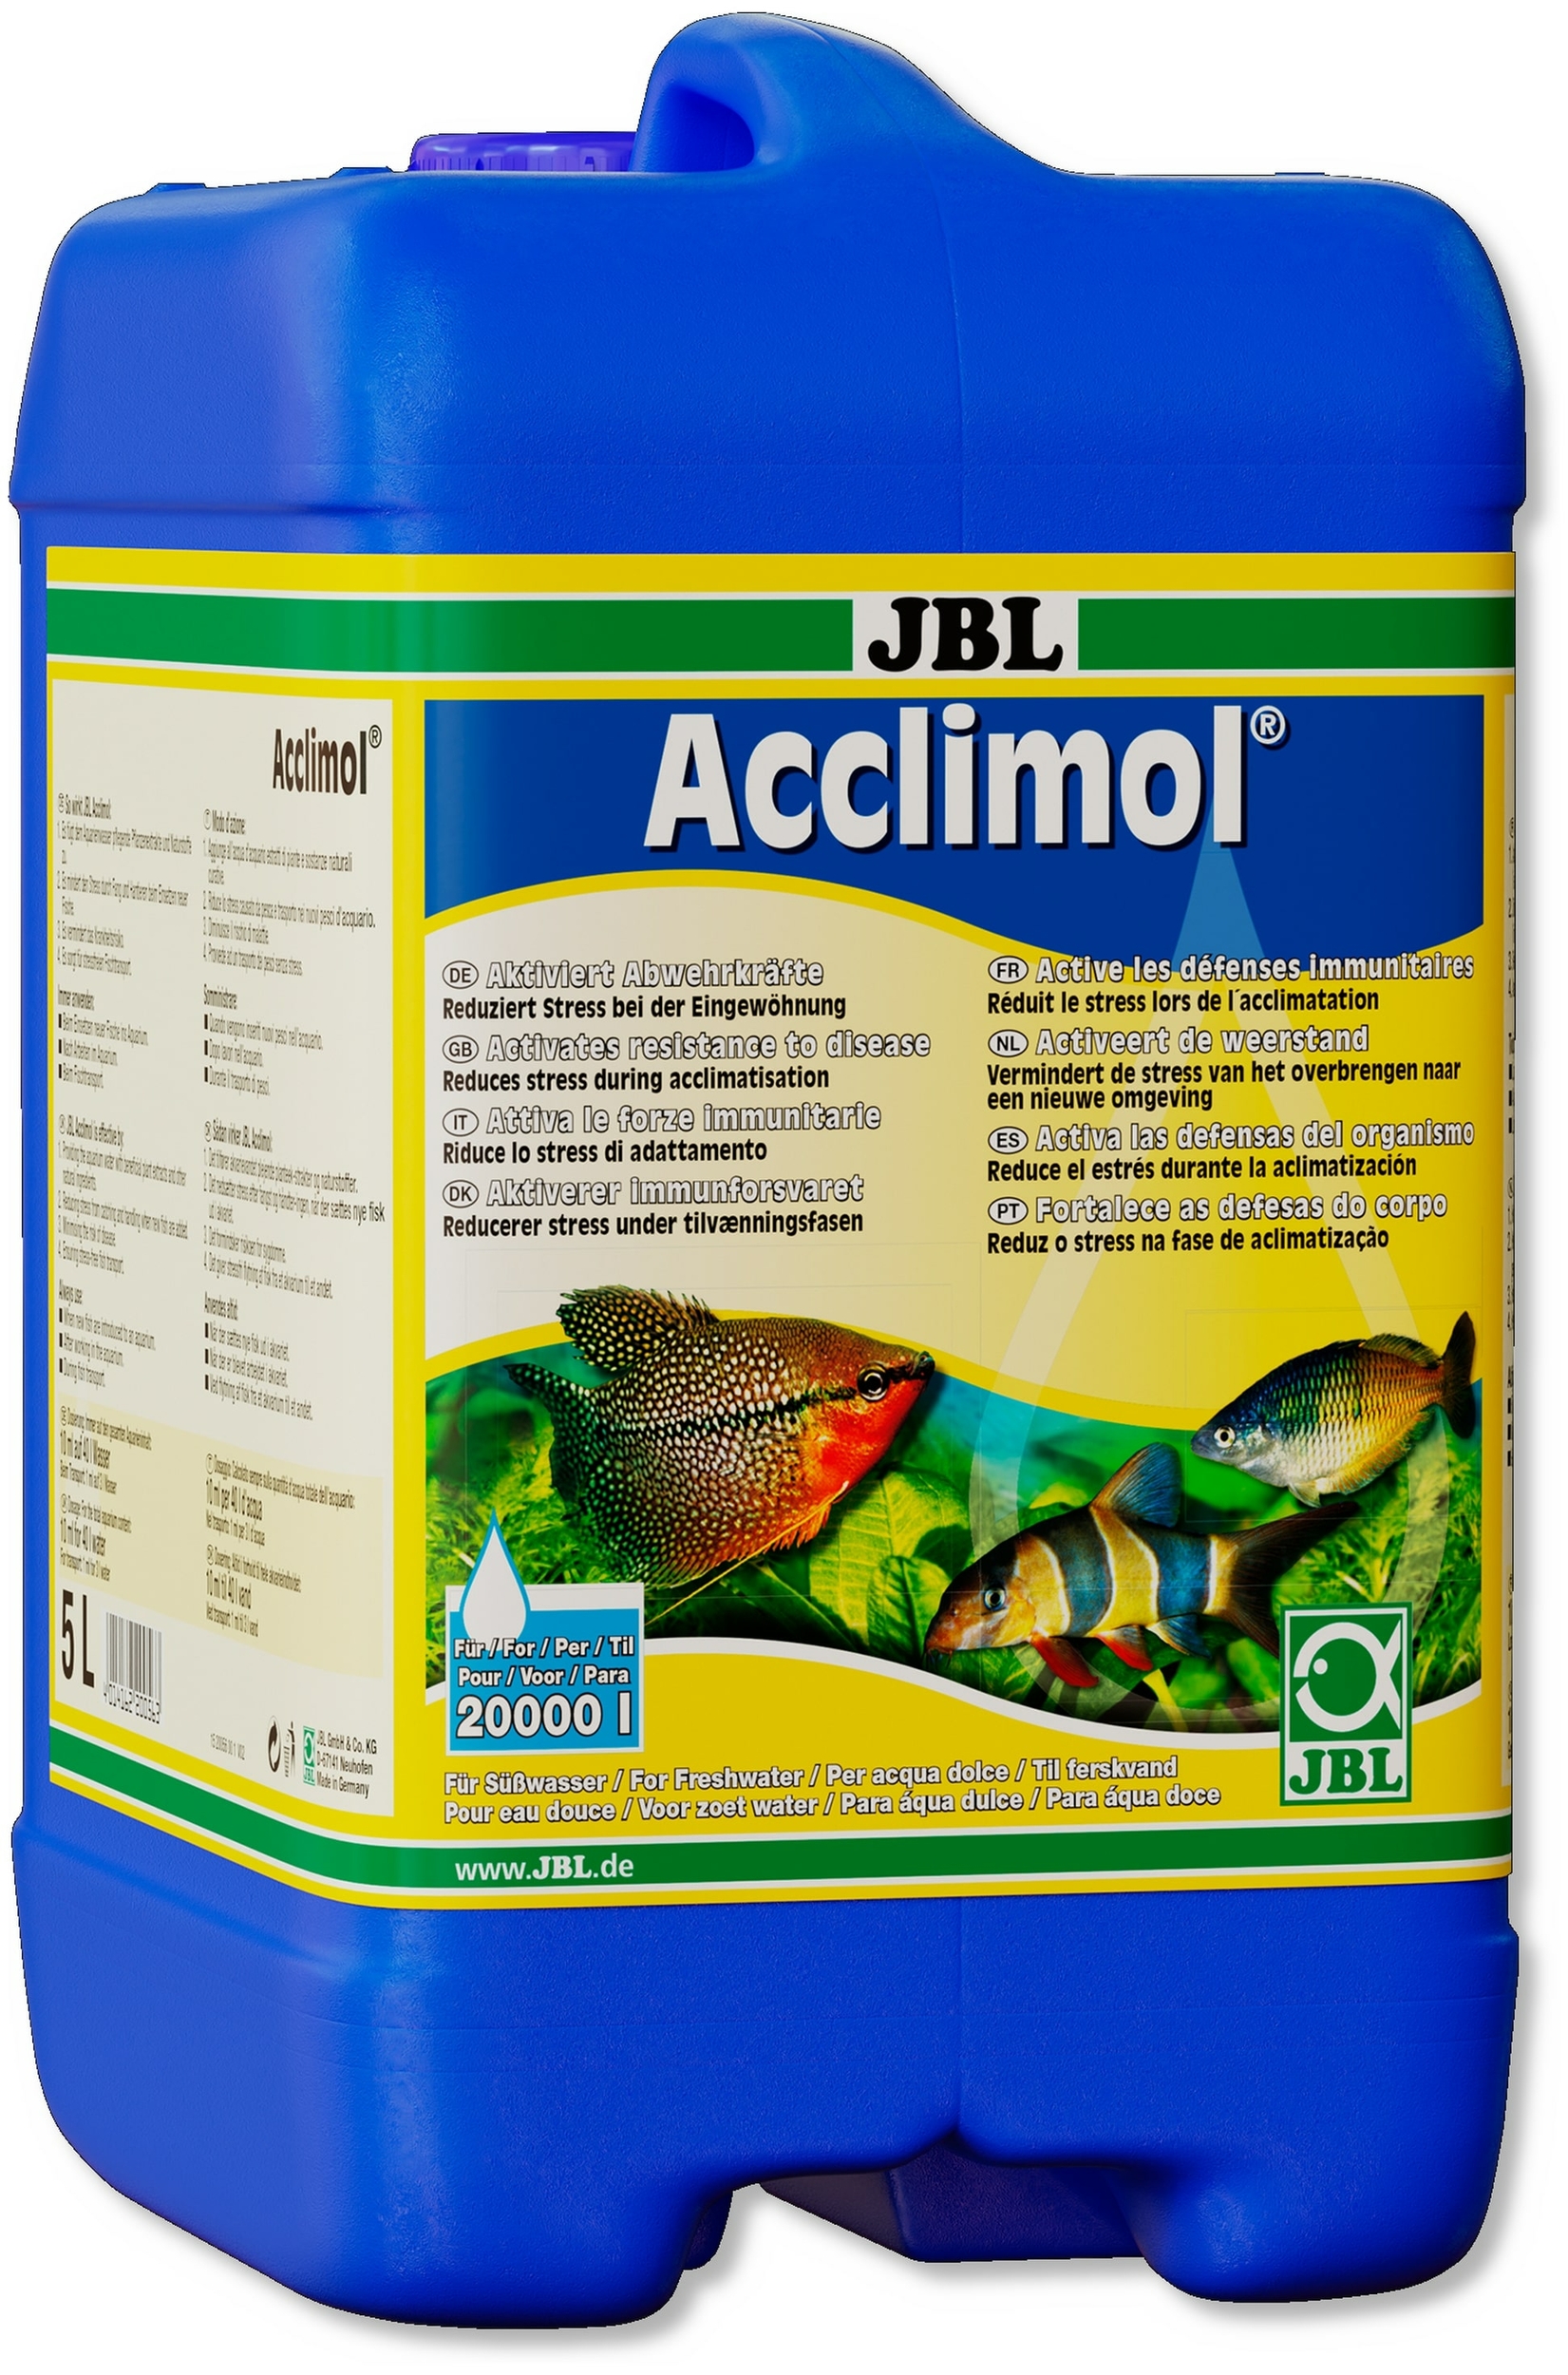 JBL Acclimol 5 L réducteur de stress pour l\'acclimatation de nouveaux poissons. Traite jusqu\'à 20000 L d\'eau